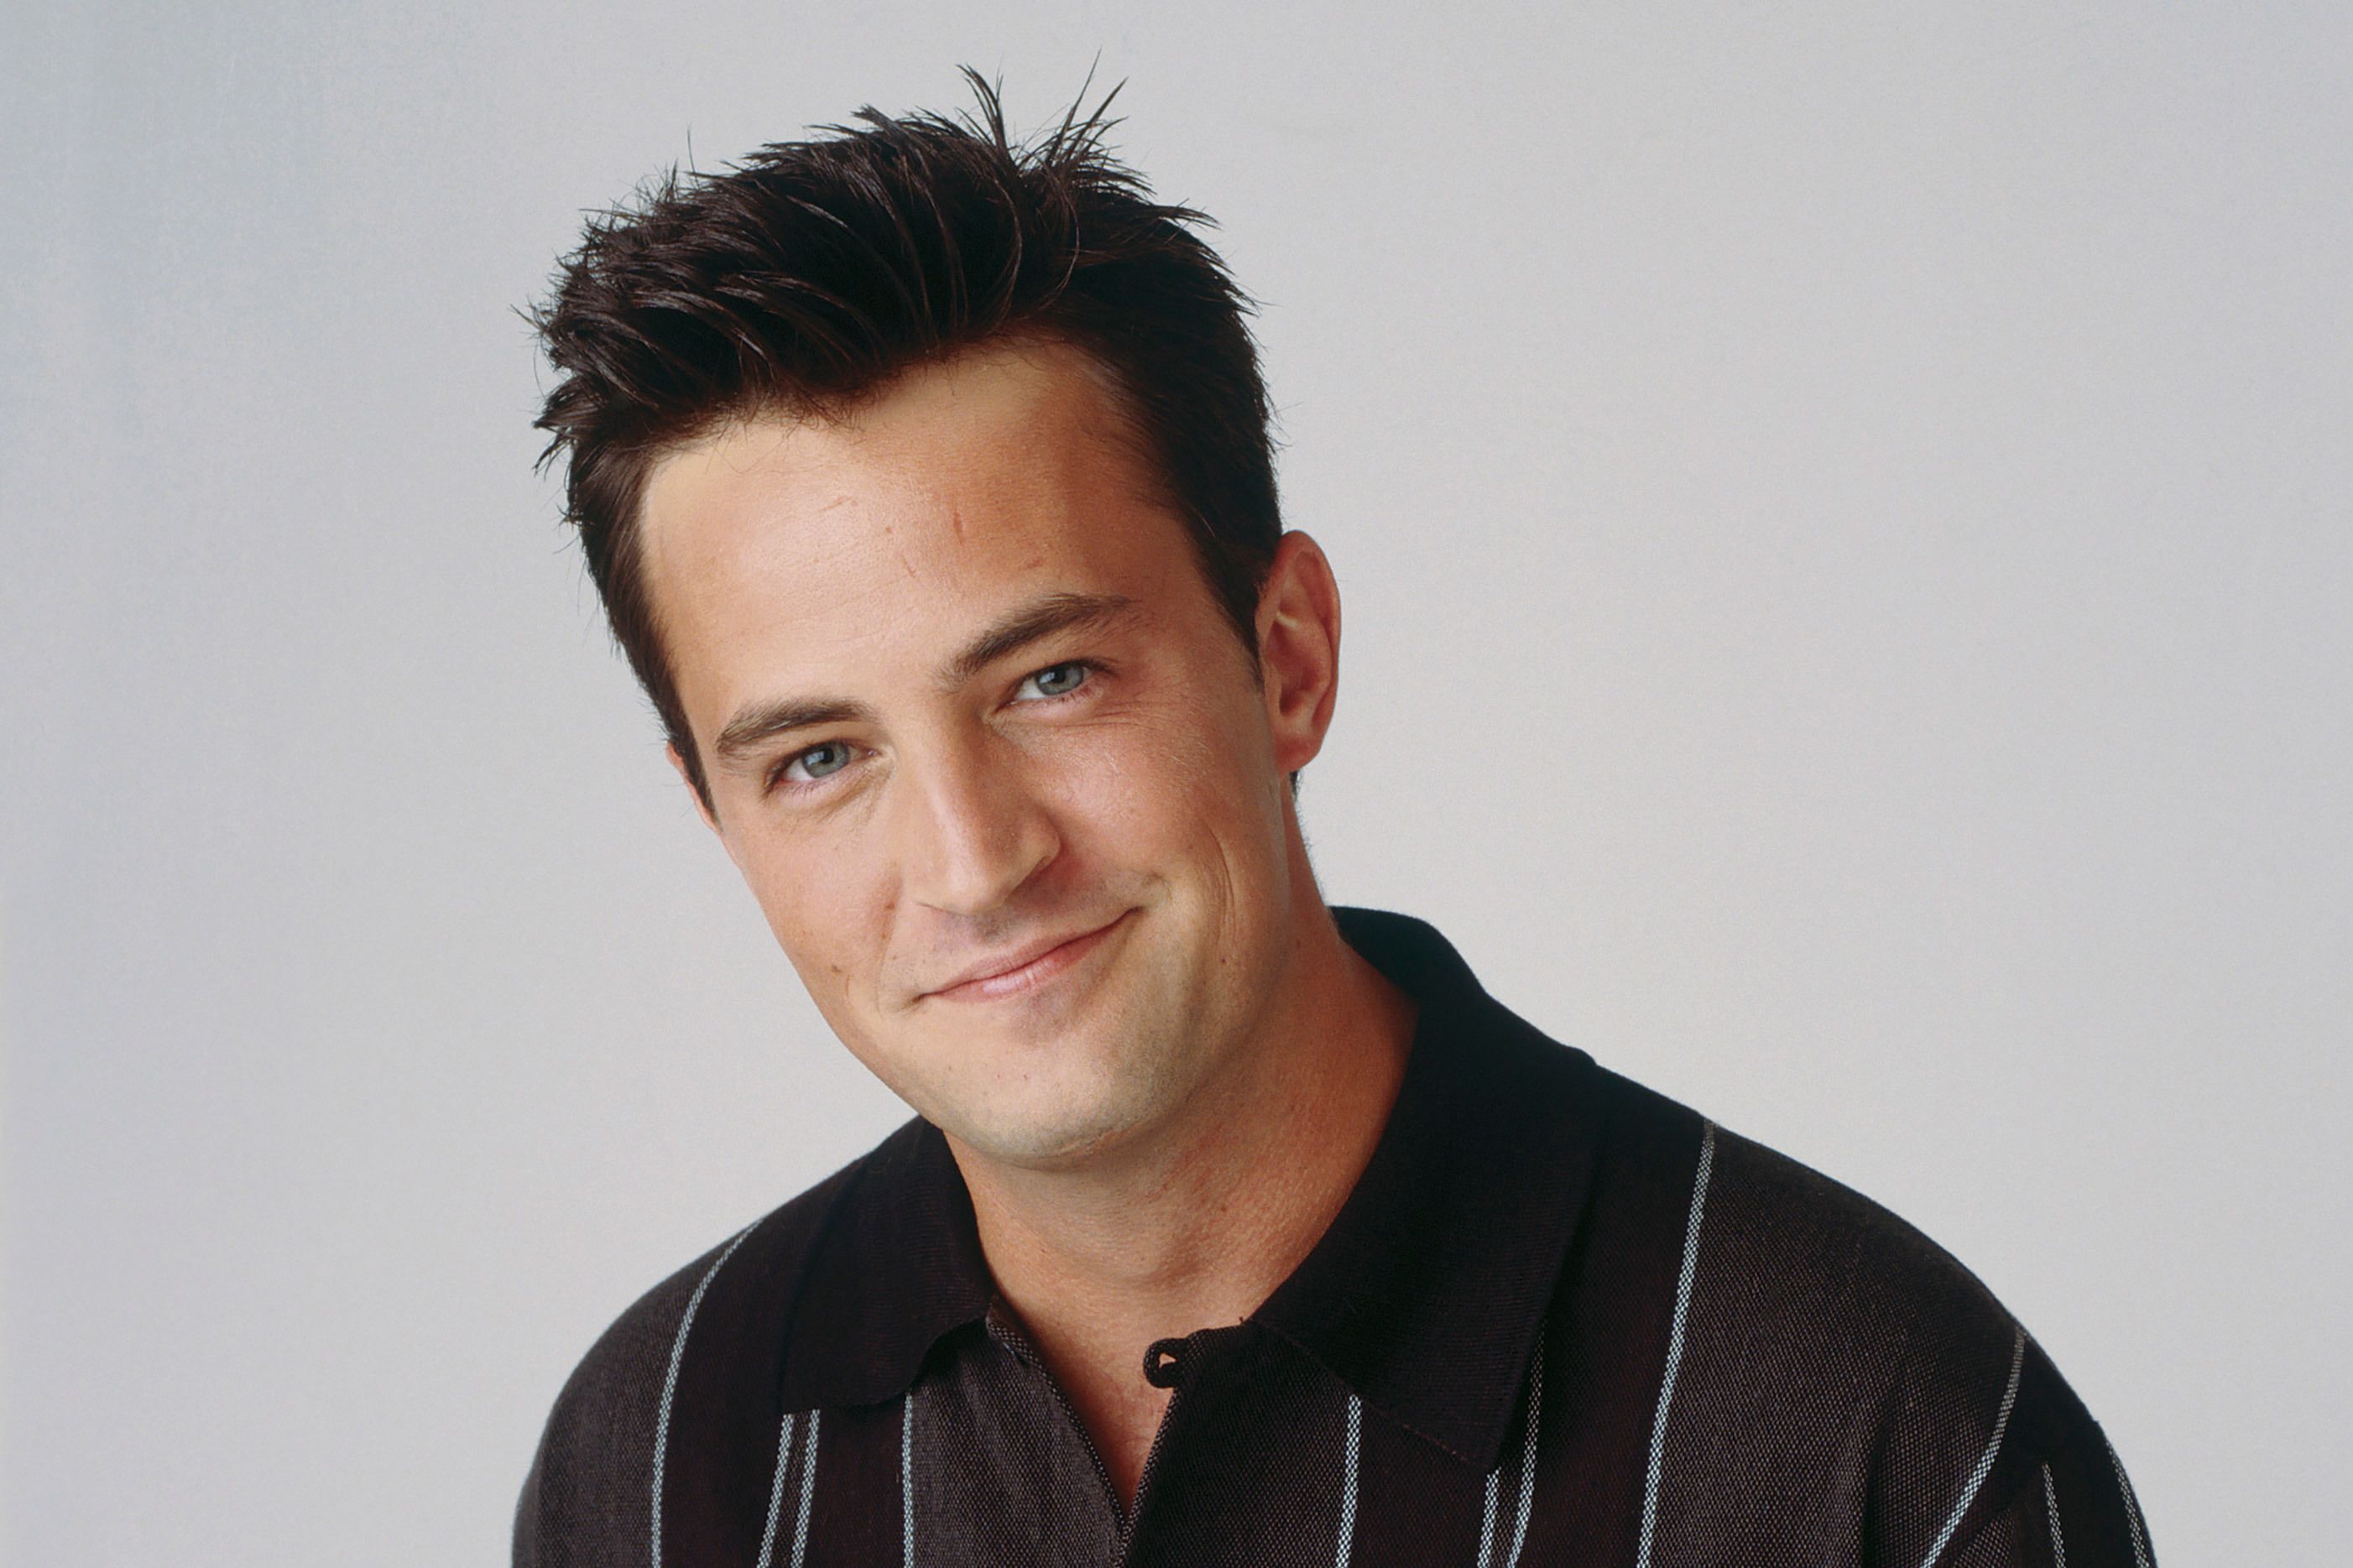 Friends'in unutulmaz yıldızı Matthew Perry'nin ölümüyle ilgili soruşturma: Birden fazla kişi suçlanabilir